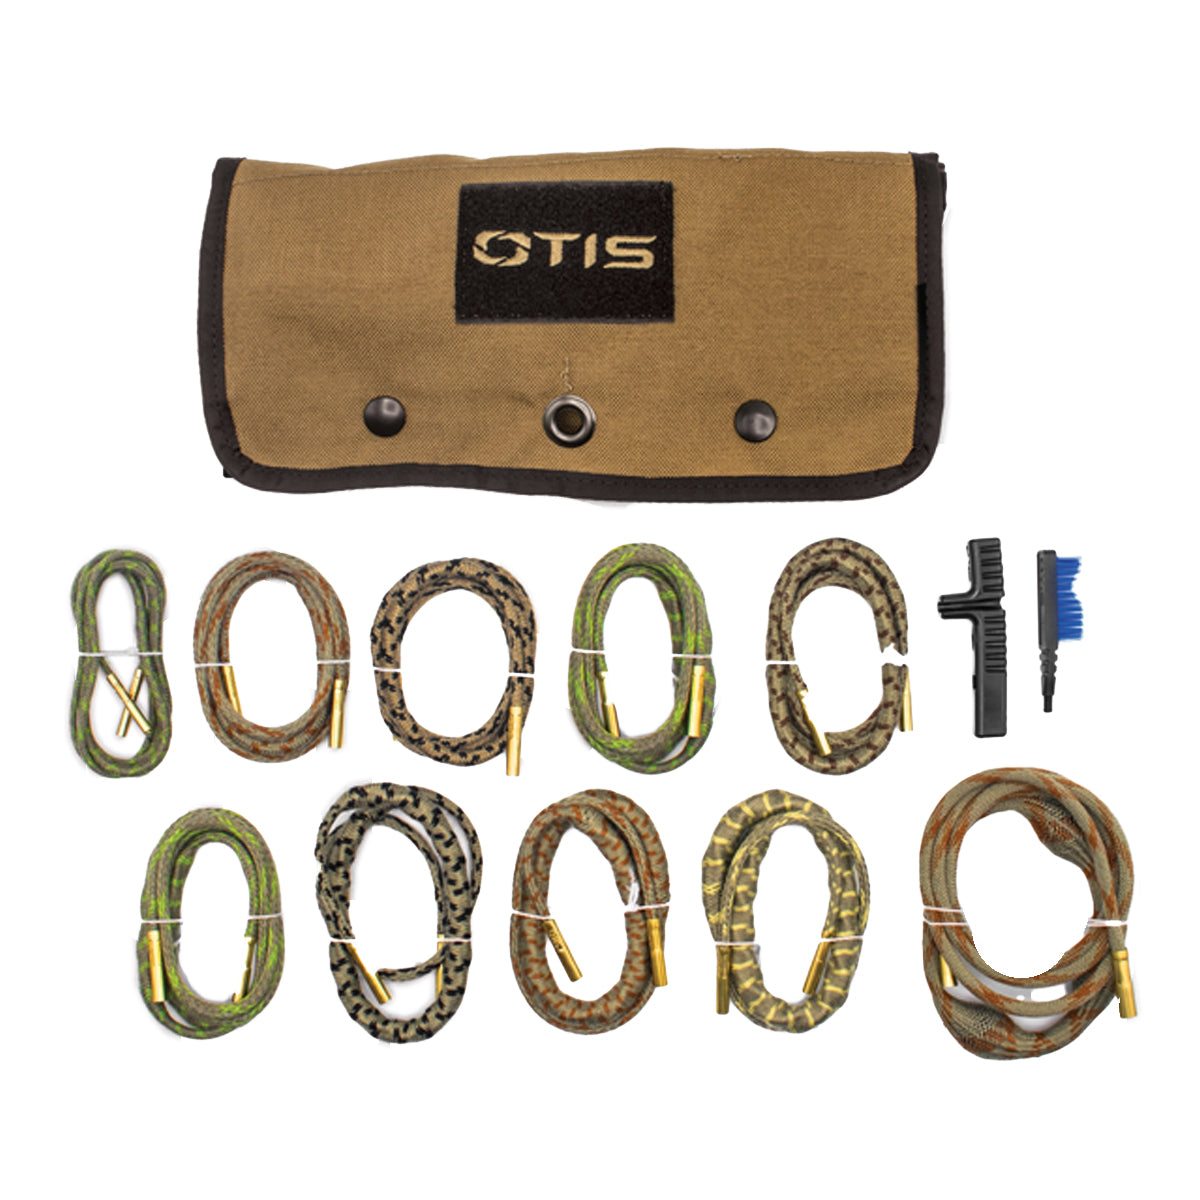 Otis Technology Ripcord® Multi-Caliber 10 Pack in  by GOHUNT | Otis Technology - GOHUNT Shop